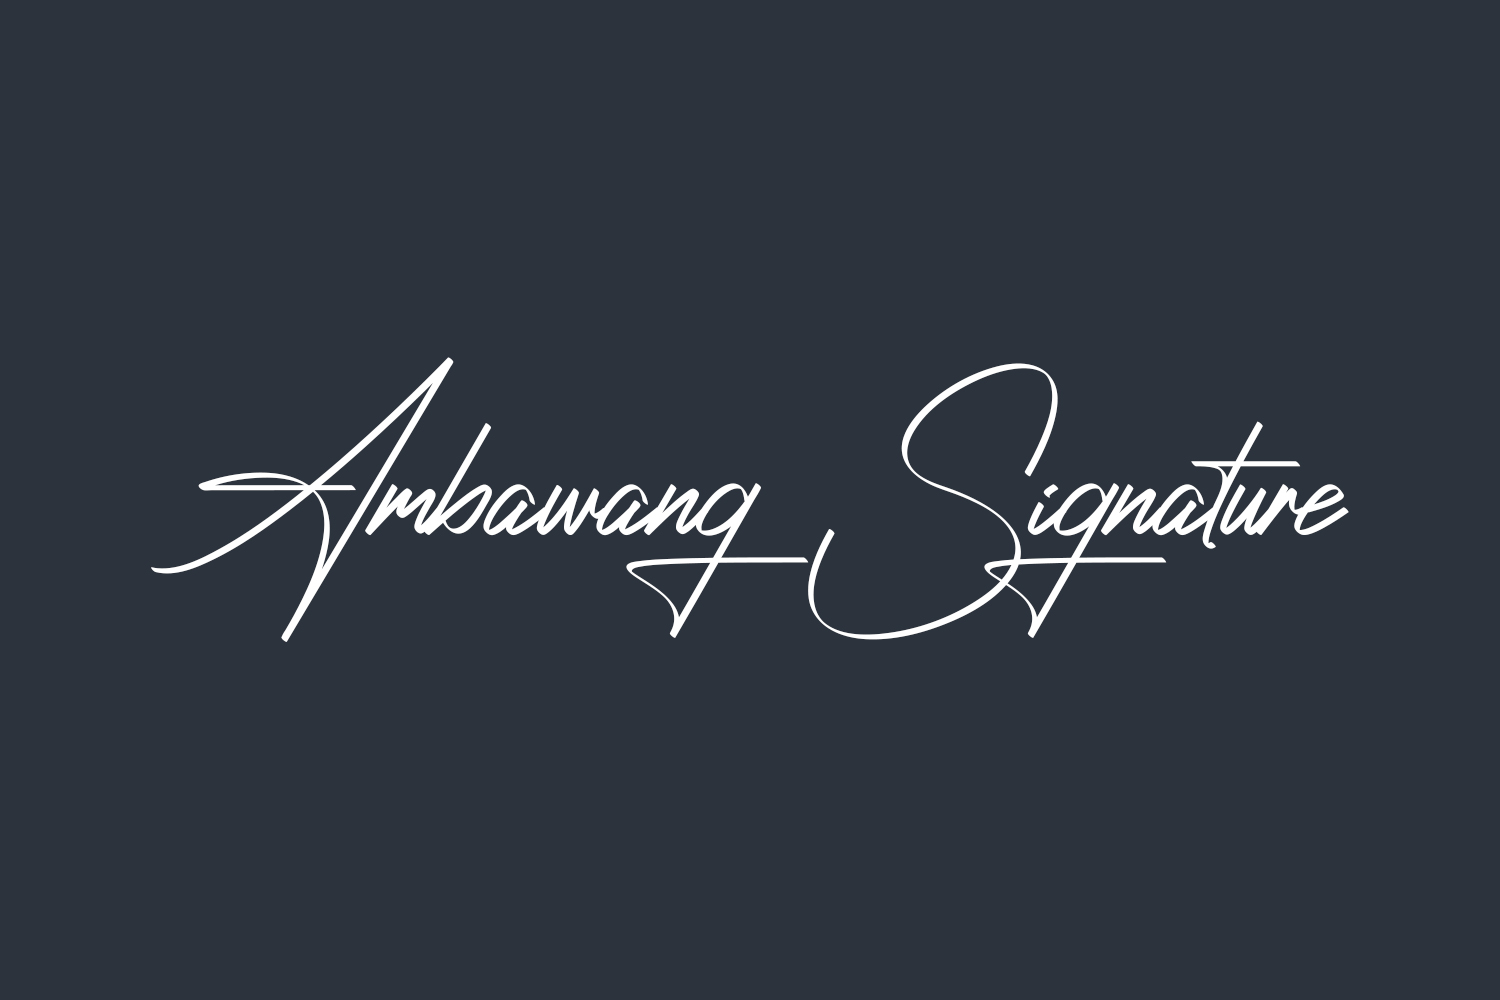 Ambawang Signature Free Font